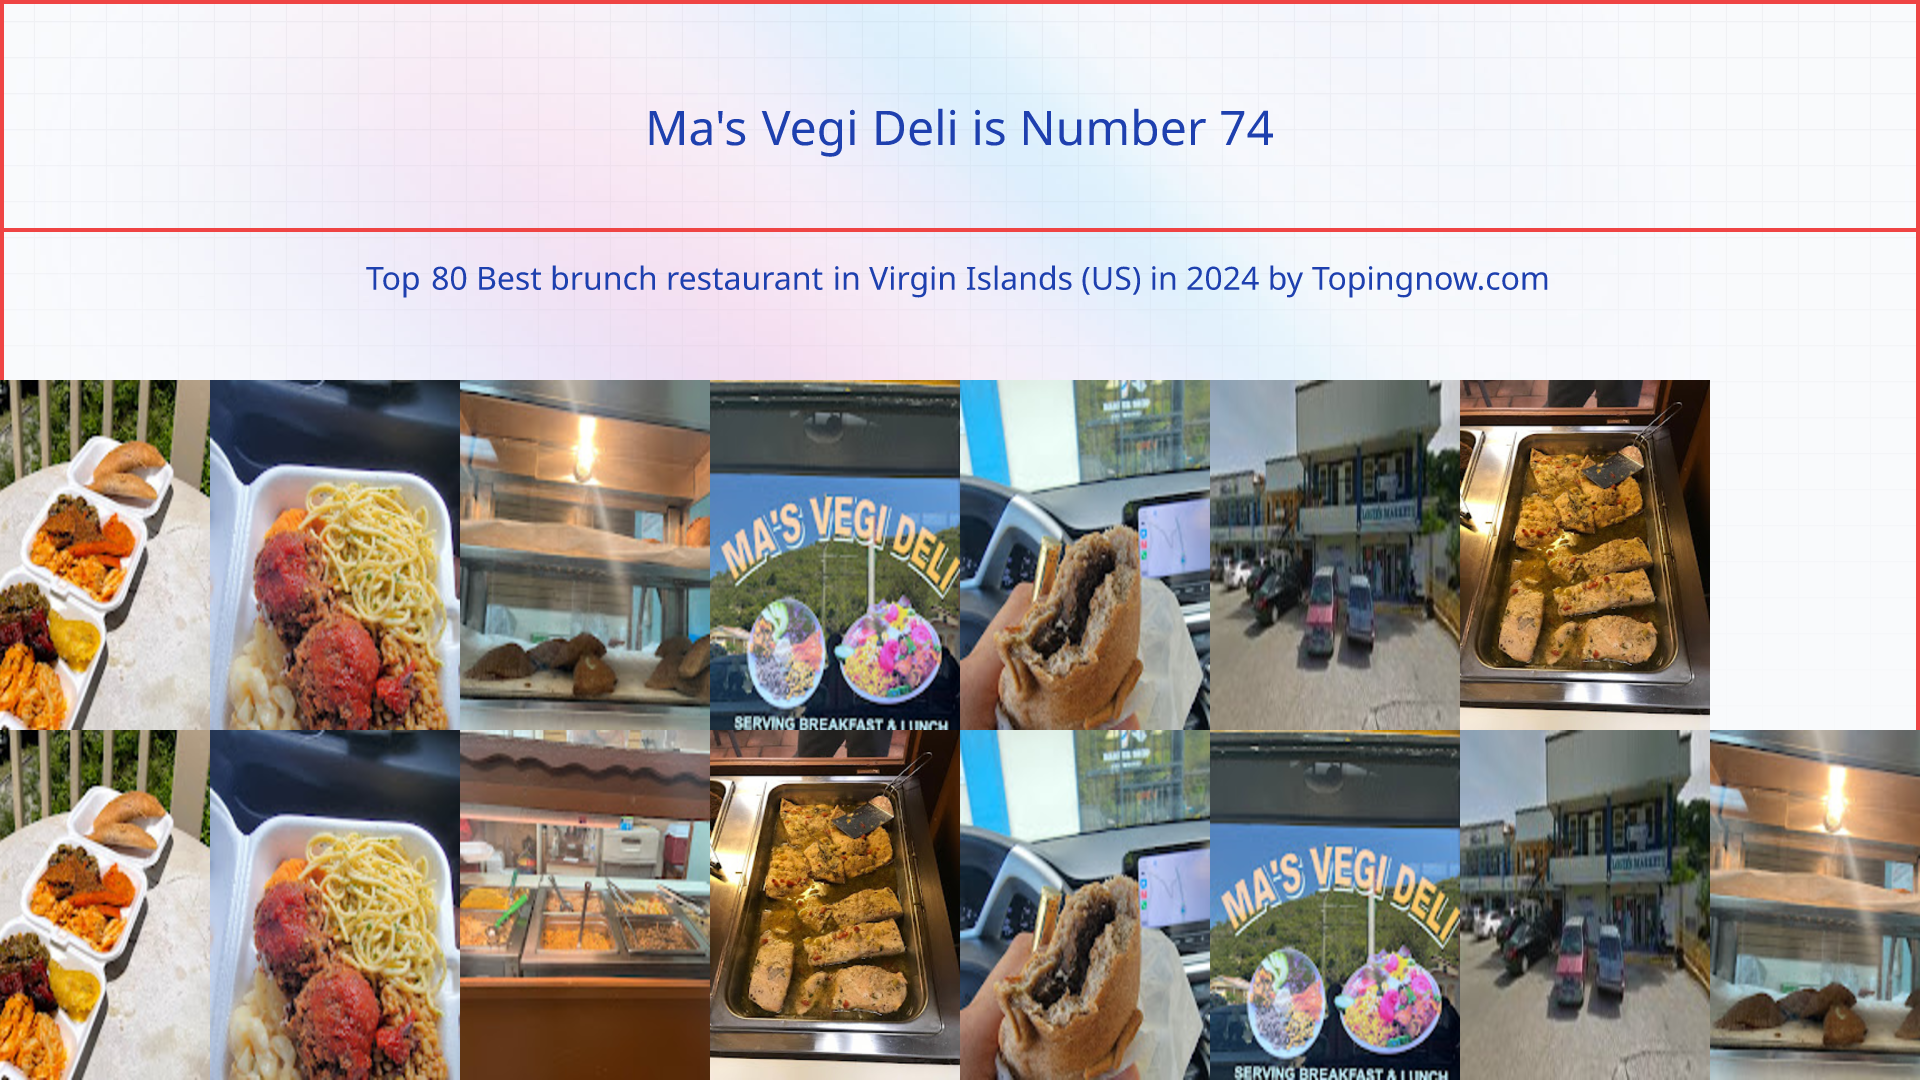 Ma's Vegi Deli: Top 80 Best brunch restaurant in Virgin Islands (US) in 2024